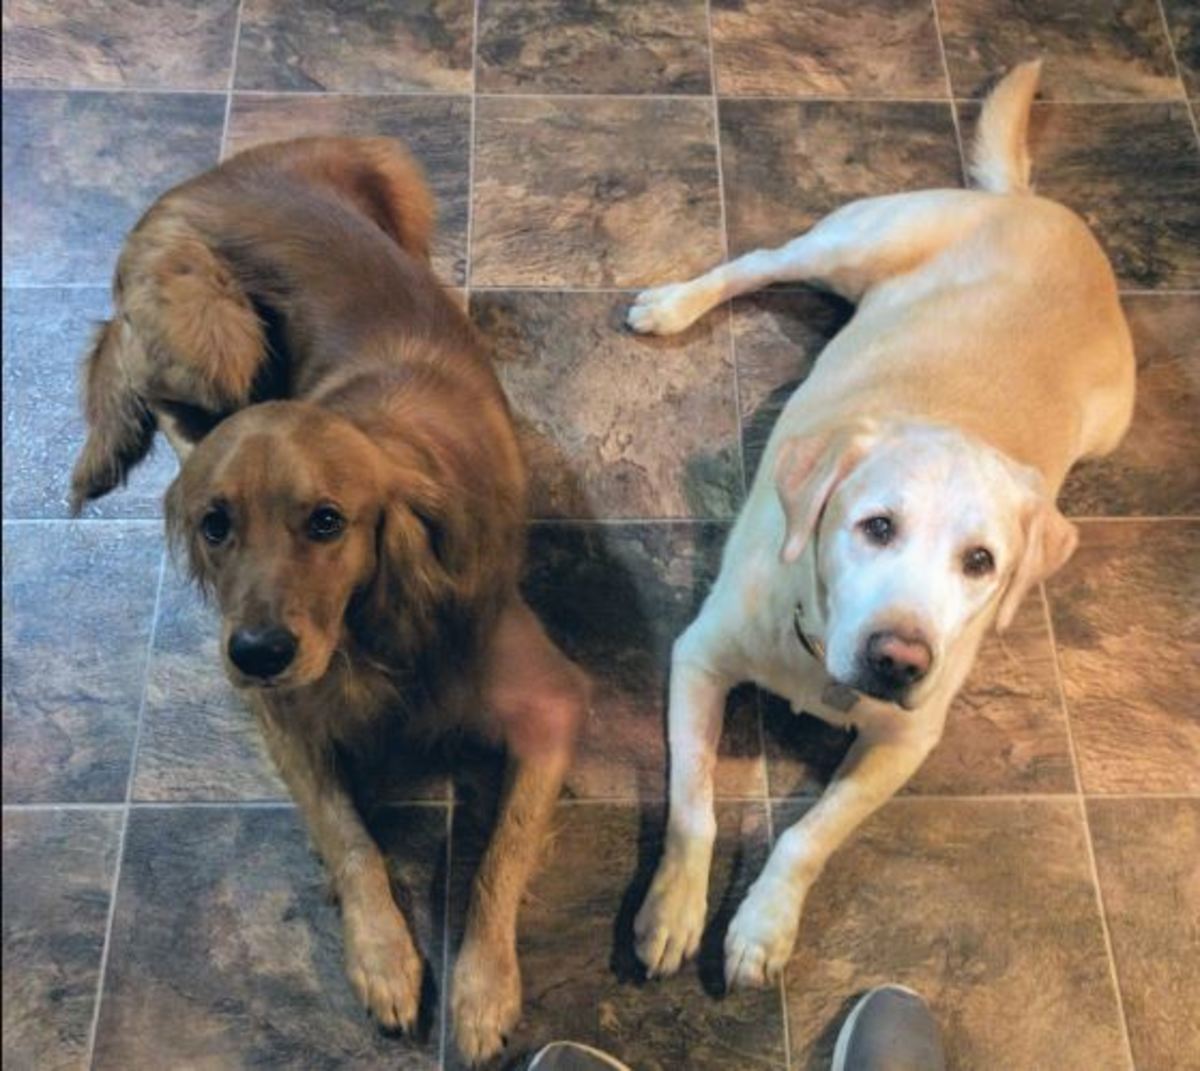  A golden retriever (left) and a yellow Labrador retriever (right). 